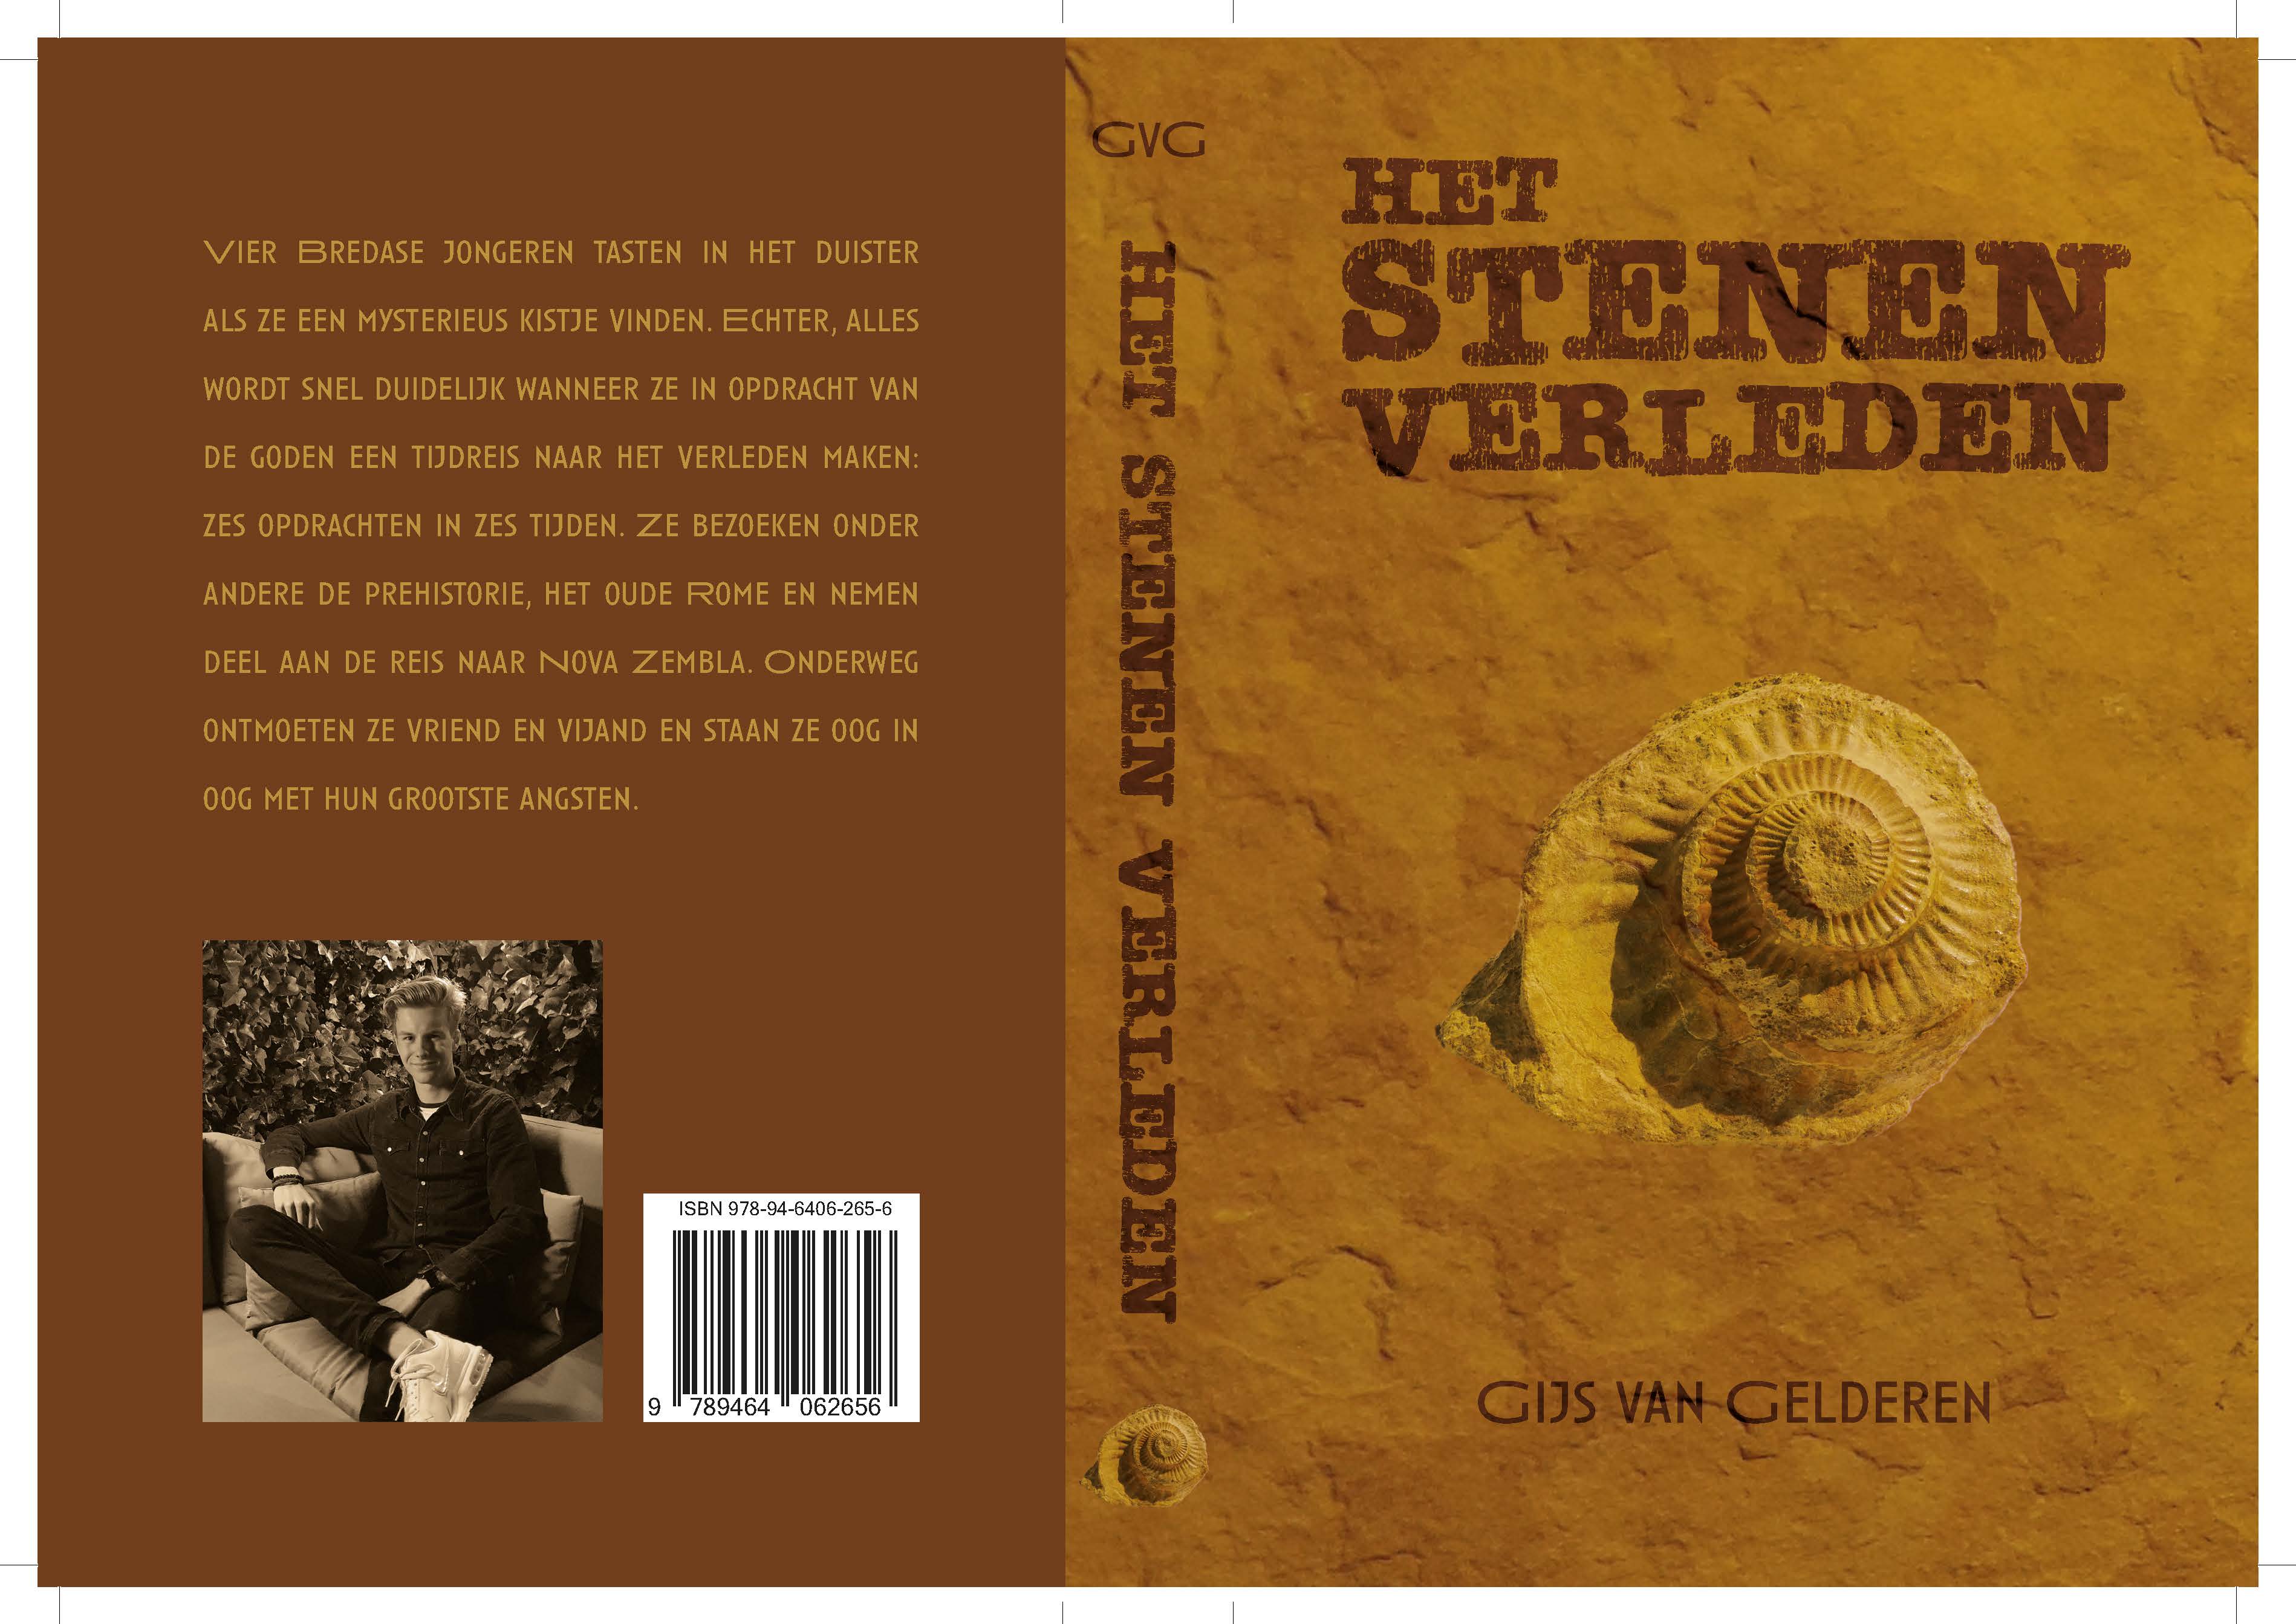 Oud-leerling Gijs van Gelderen publiceert roman